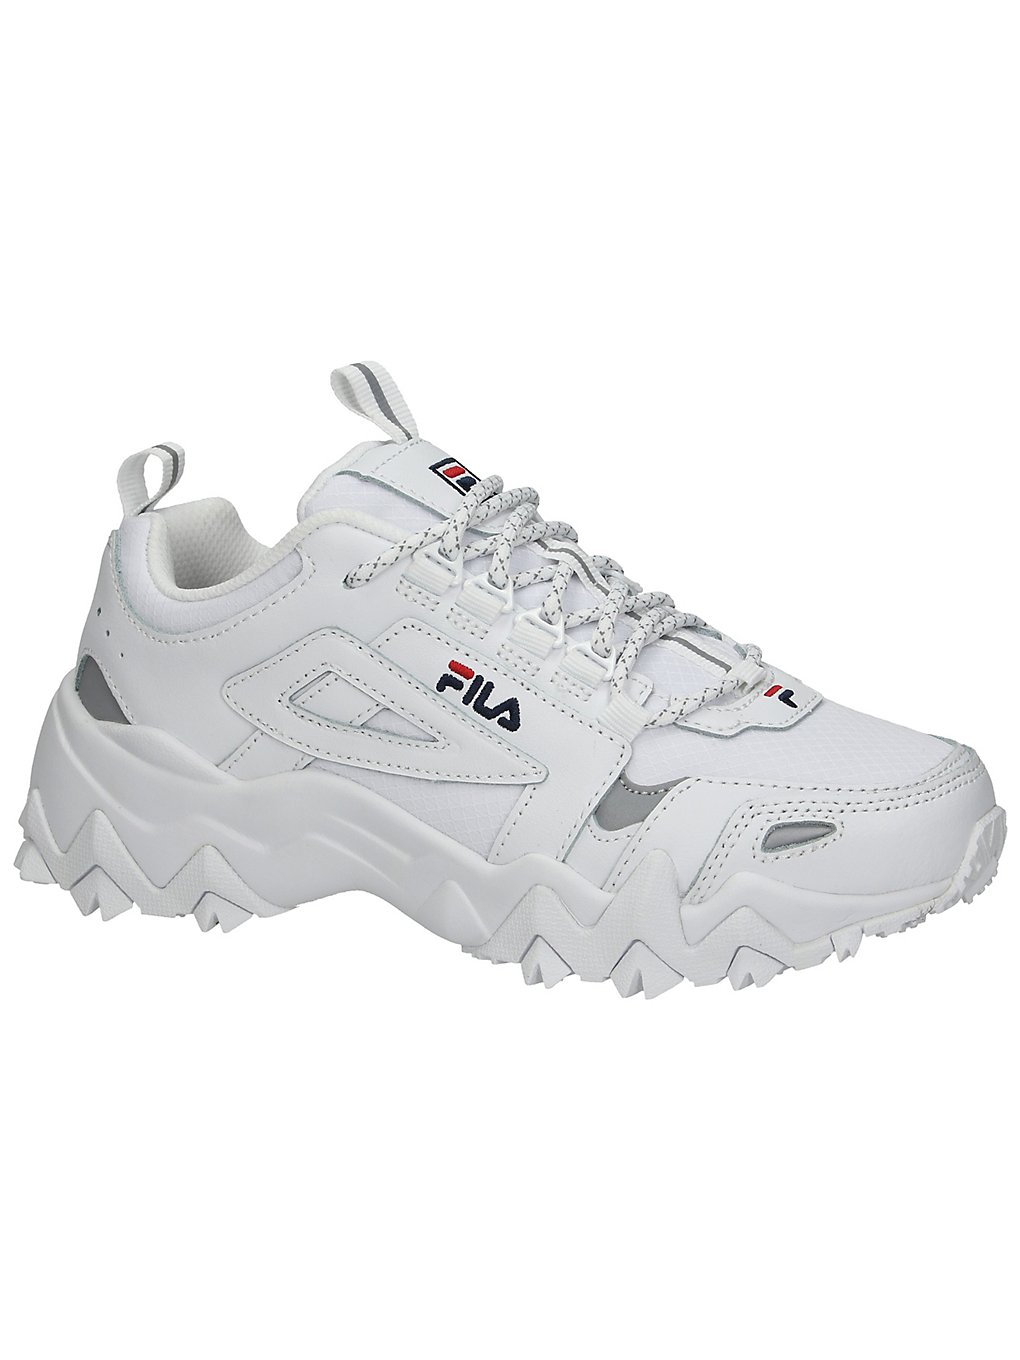 Fila trail wk sneakers valkoinen, fila